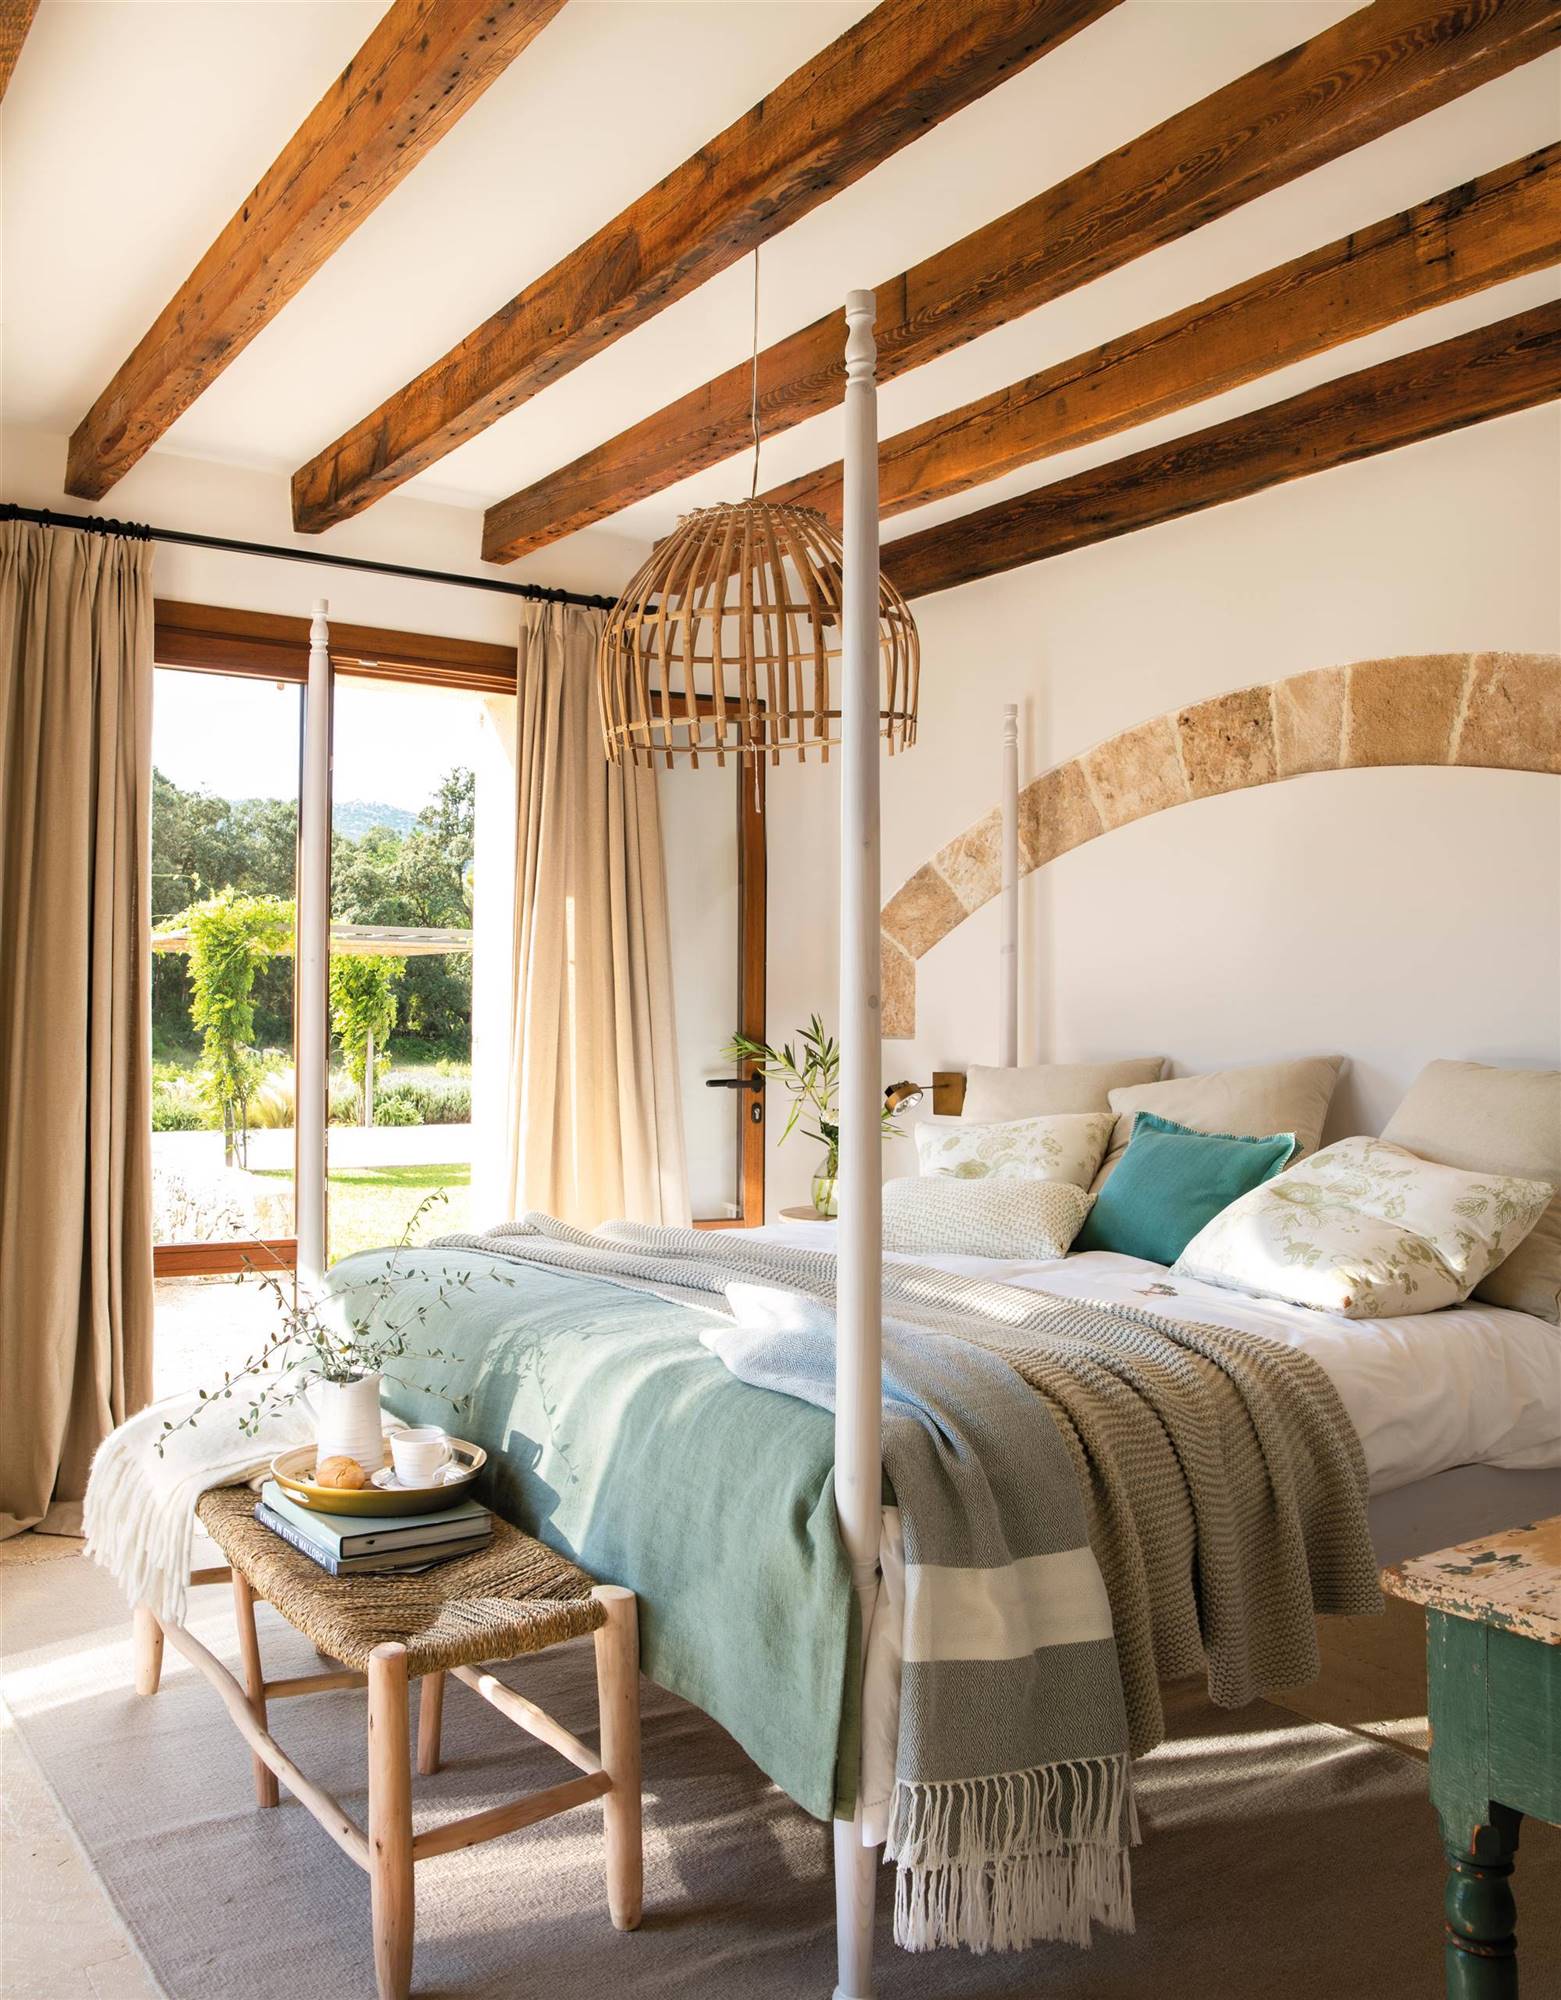 Dormitorio con vigas de madera y revestimiento en arco en zona de cabecero 00531424